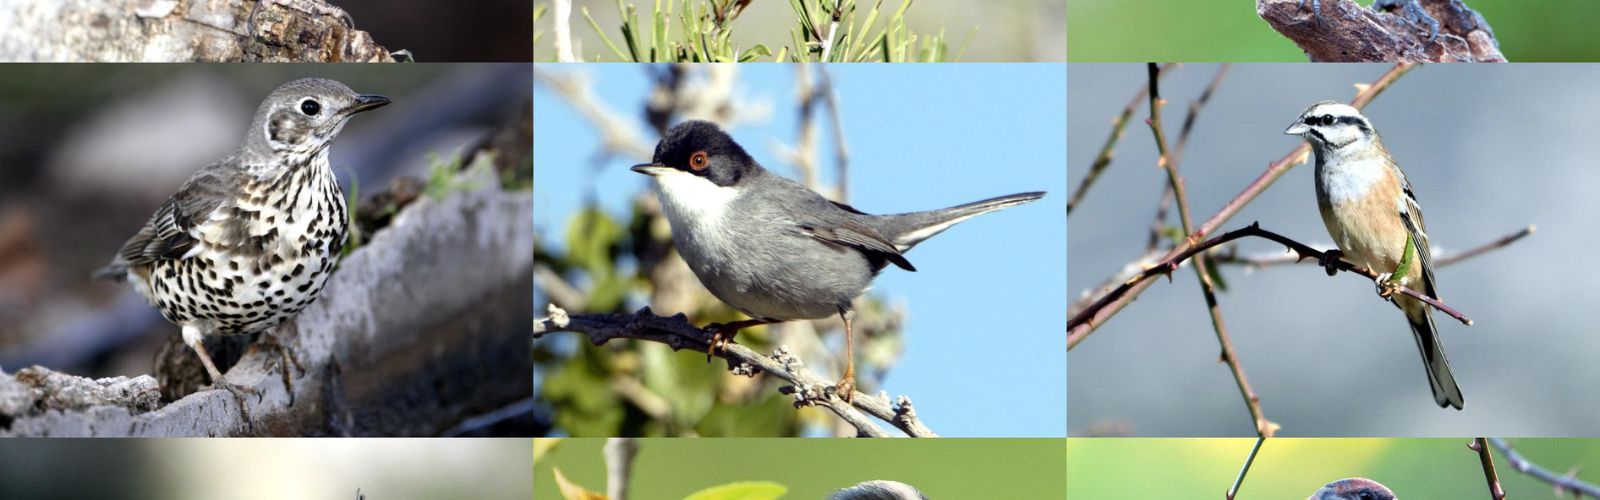 El grupo de investigación ECOMED revela un descenso en la riqueza de especies de aves forestales en la Región a causa del cambio global